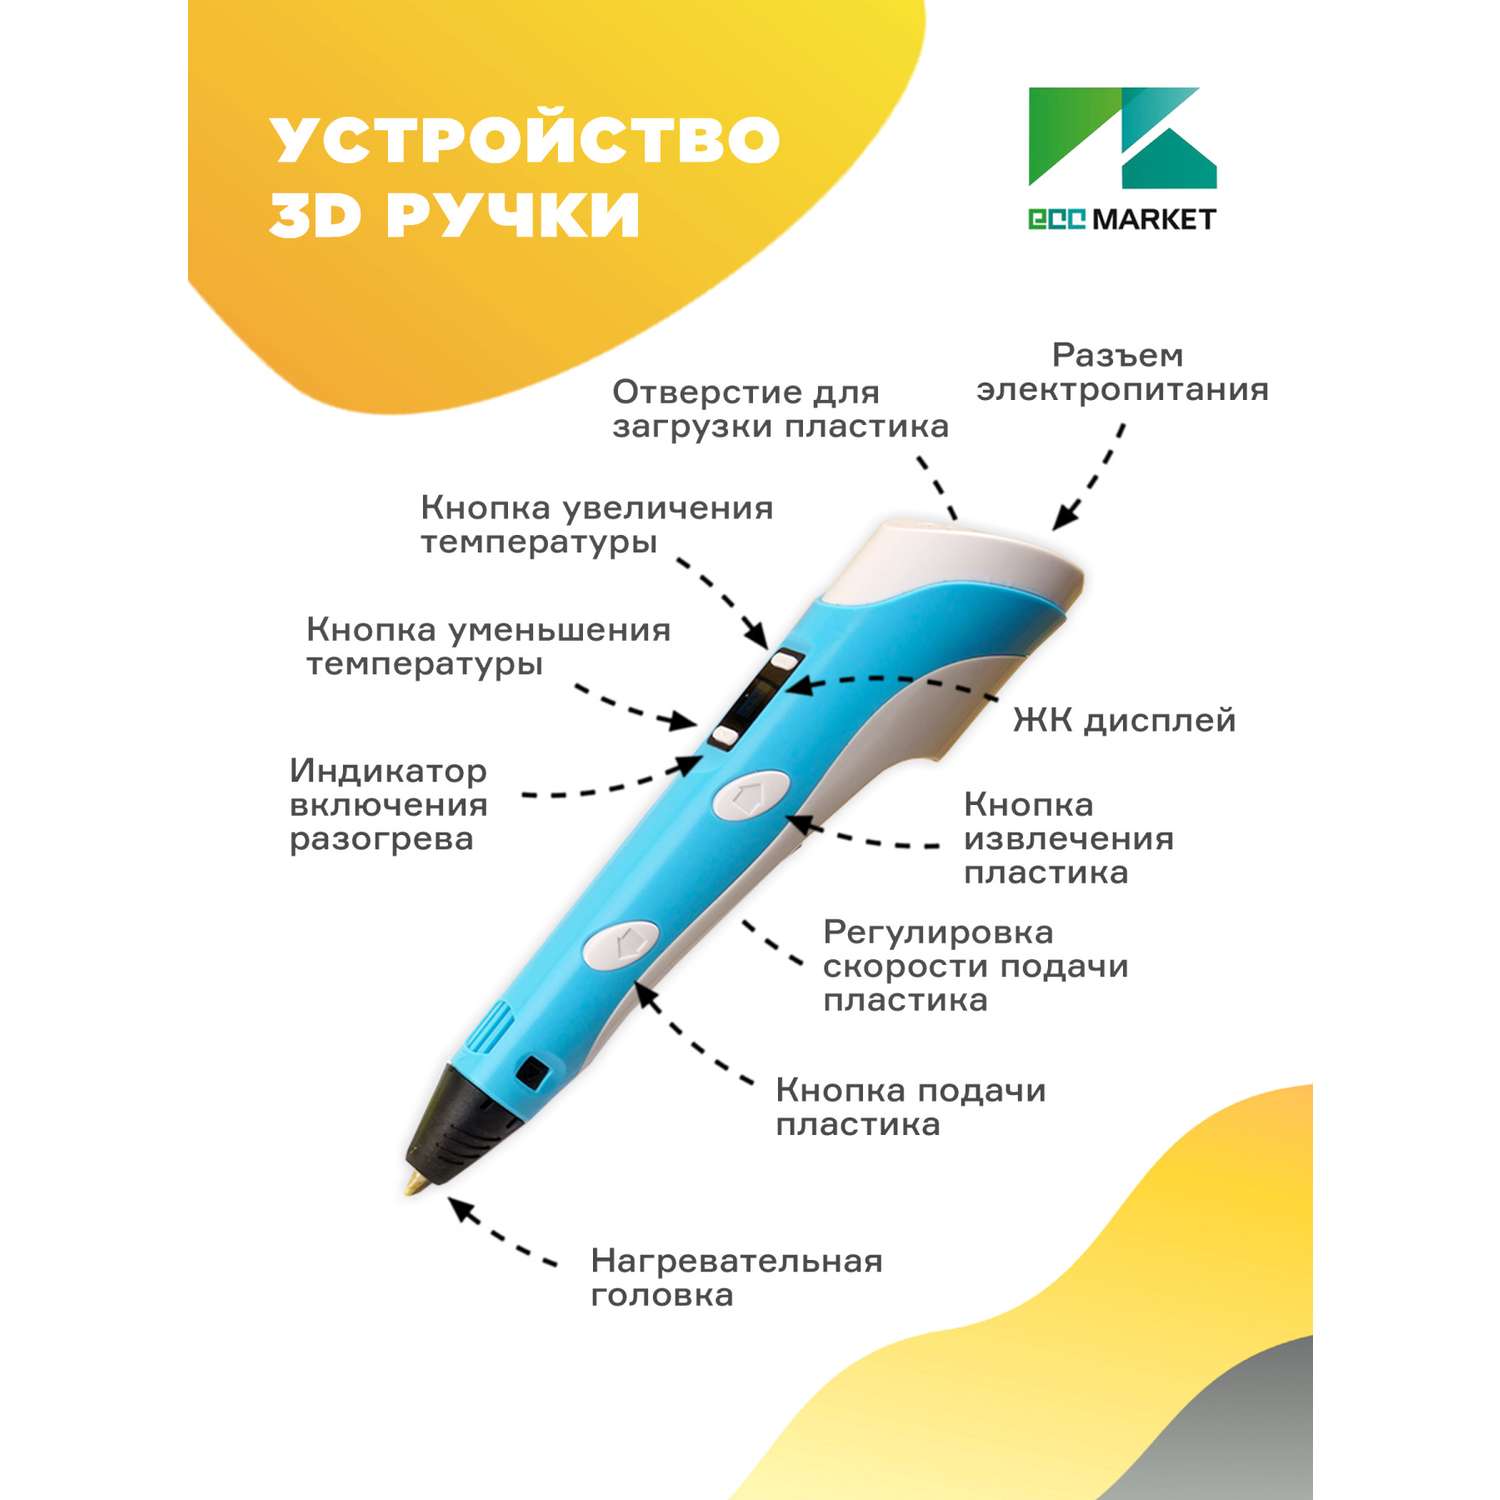 3D ручка ECC Market 3D Pen PRO 7 голубая - фото 3